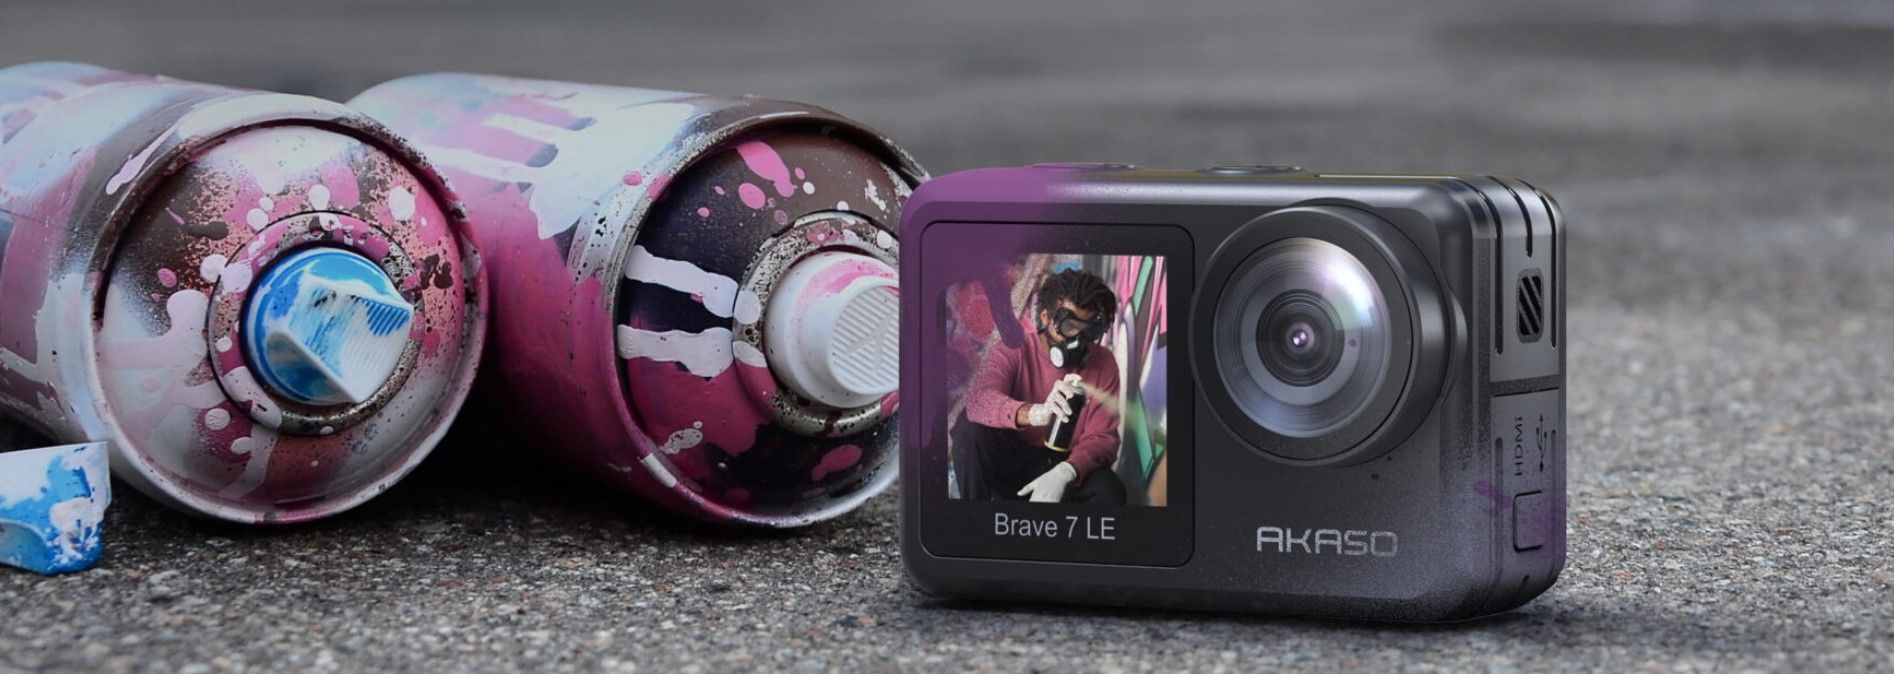 sodobna akcijska kamera akaso brave 7 le čudovite fotografije visokokakovostni videoposnetki različni načini polnilna baterija visoka vzdržljivost